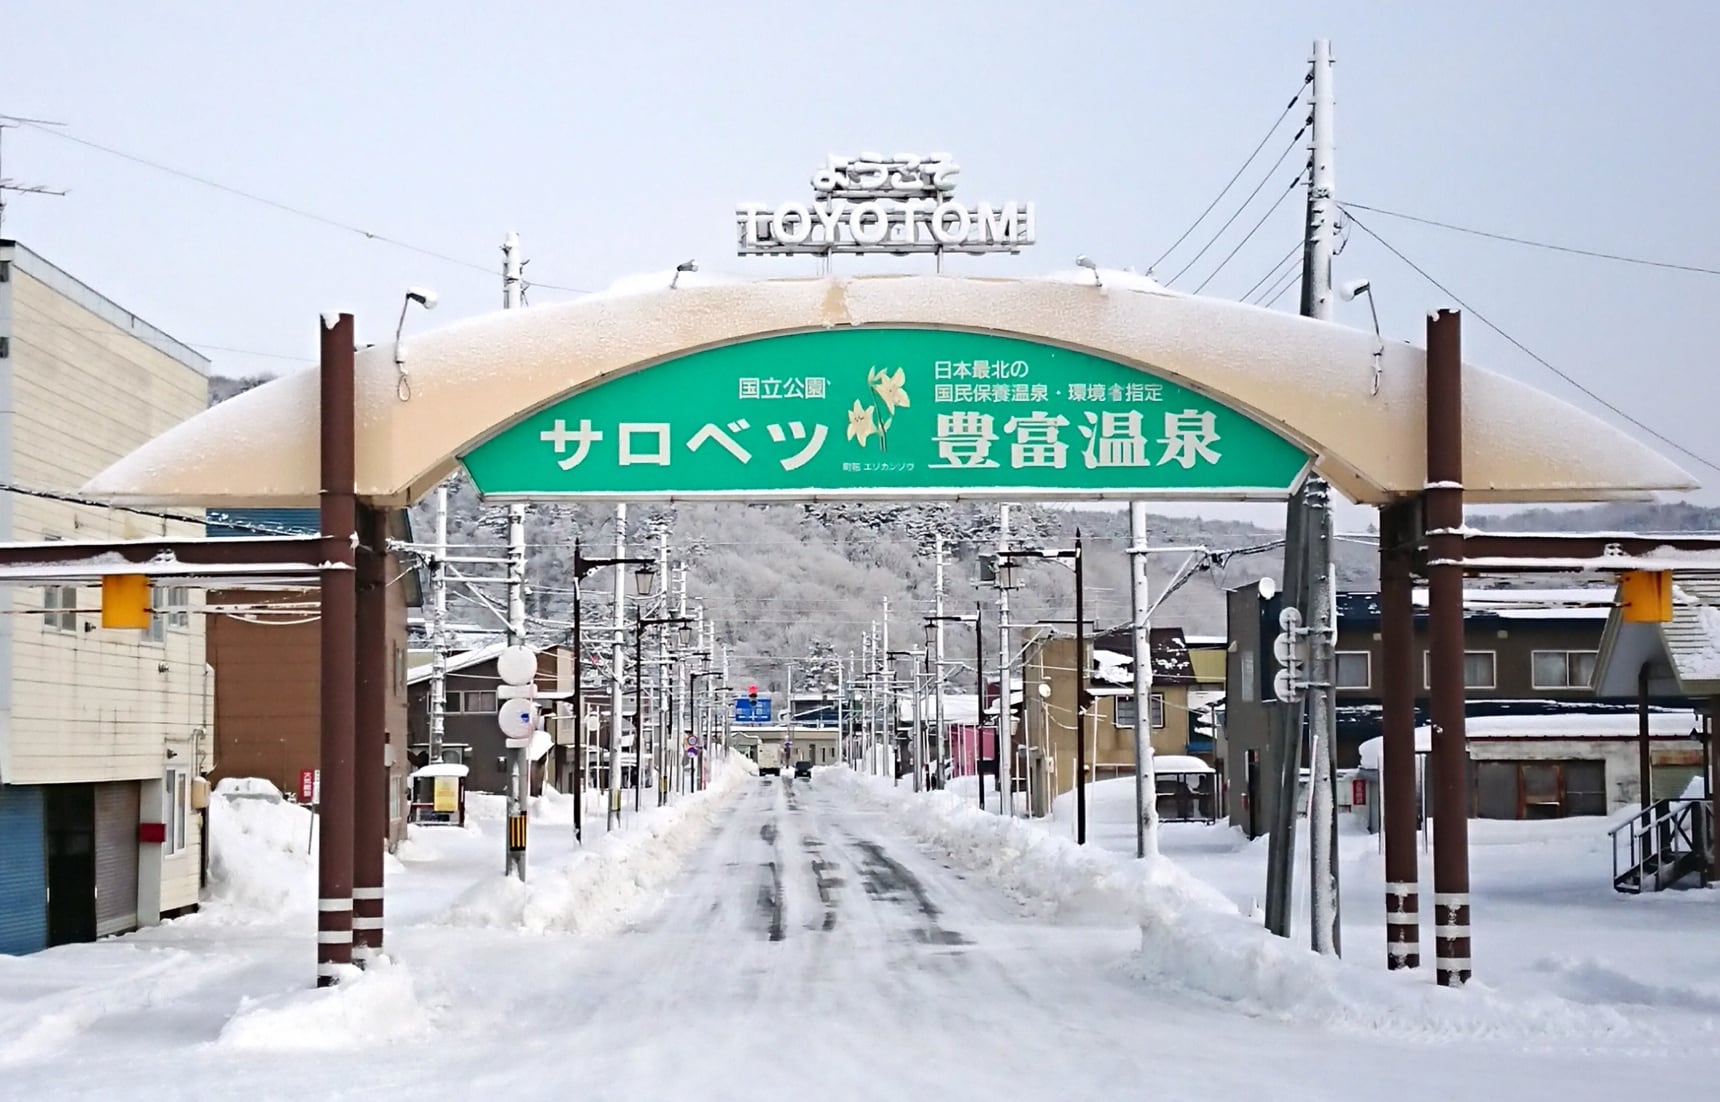 【北海道自由行】美食・雪上體驗與設計旅宿 讓人心暖暖的豐富町